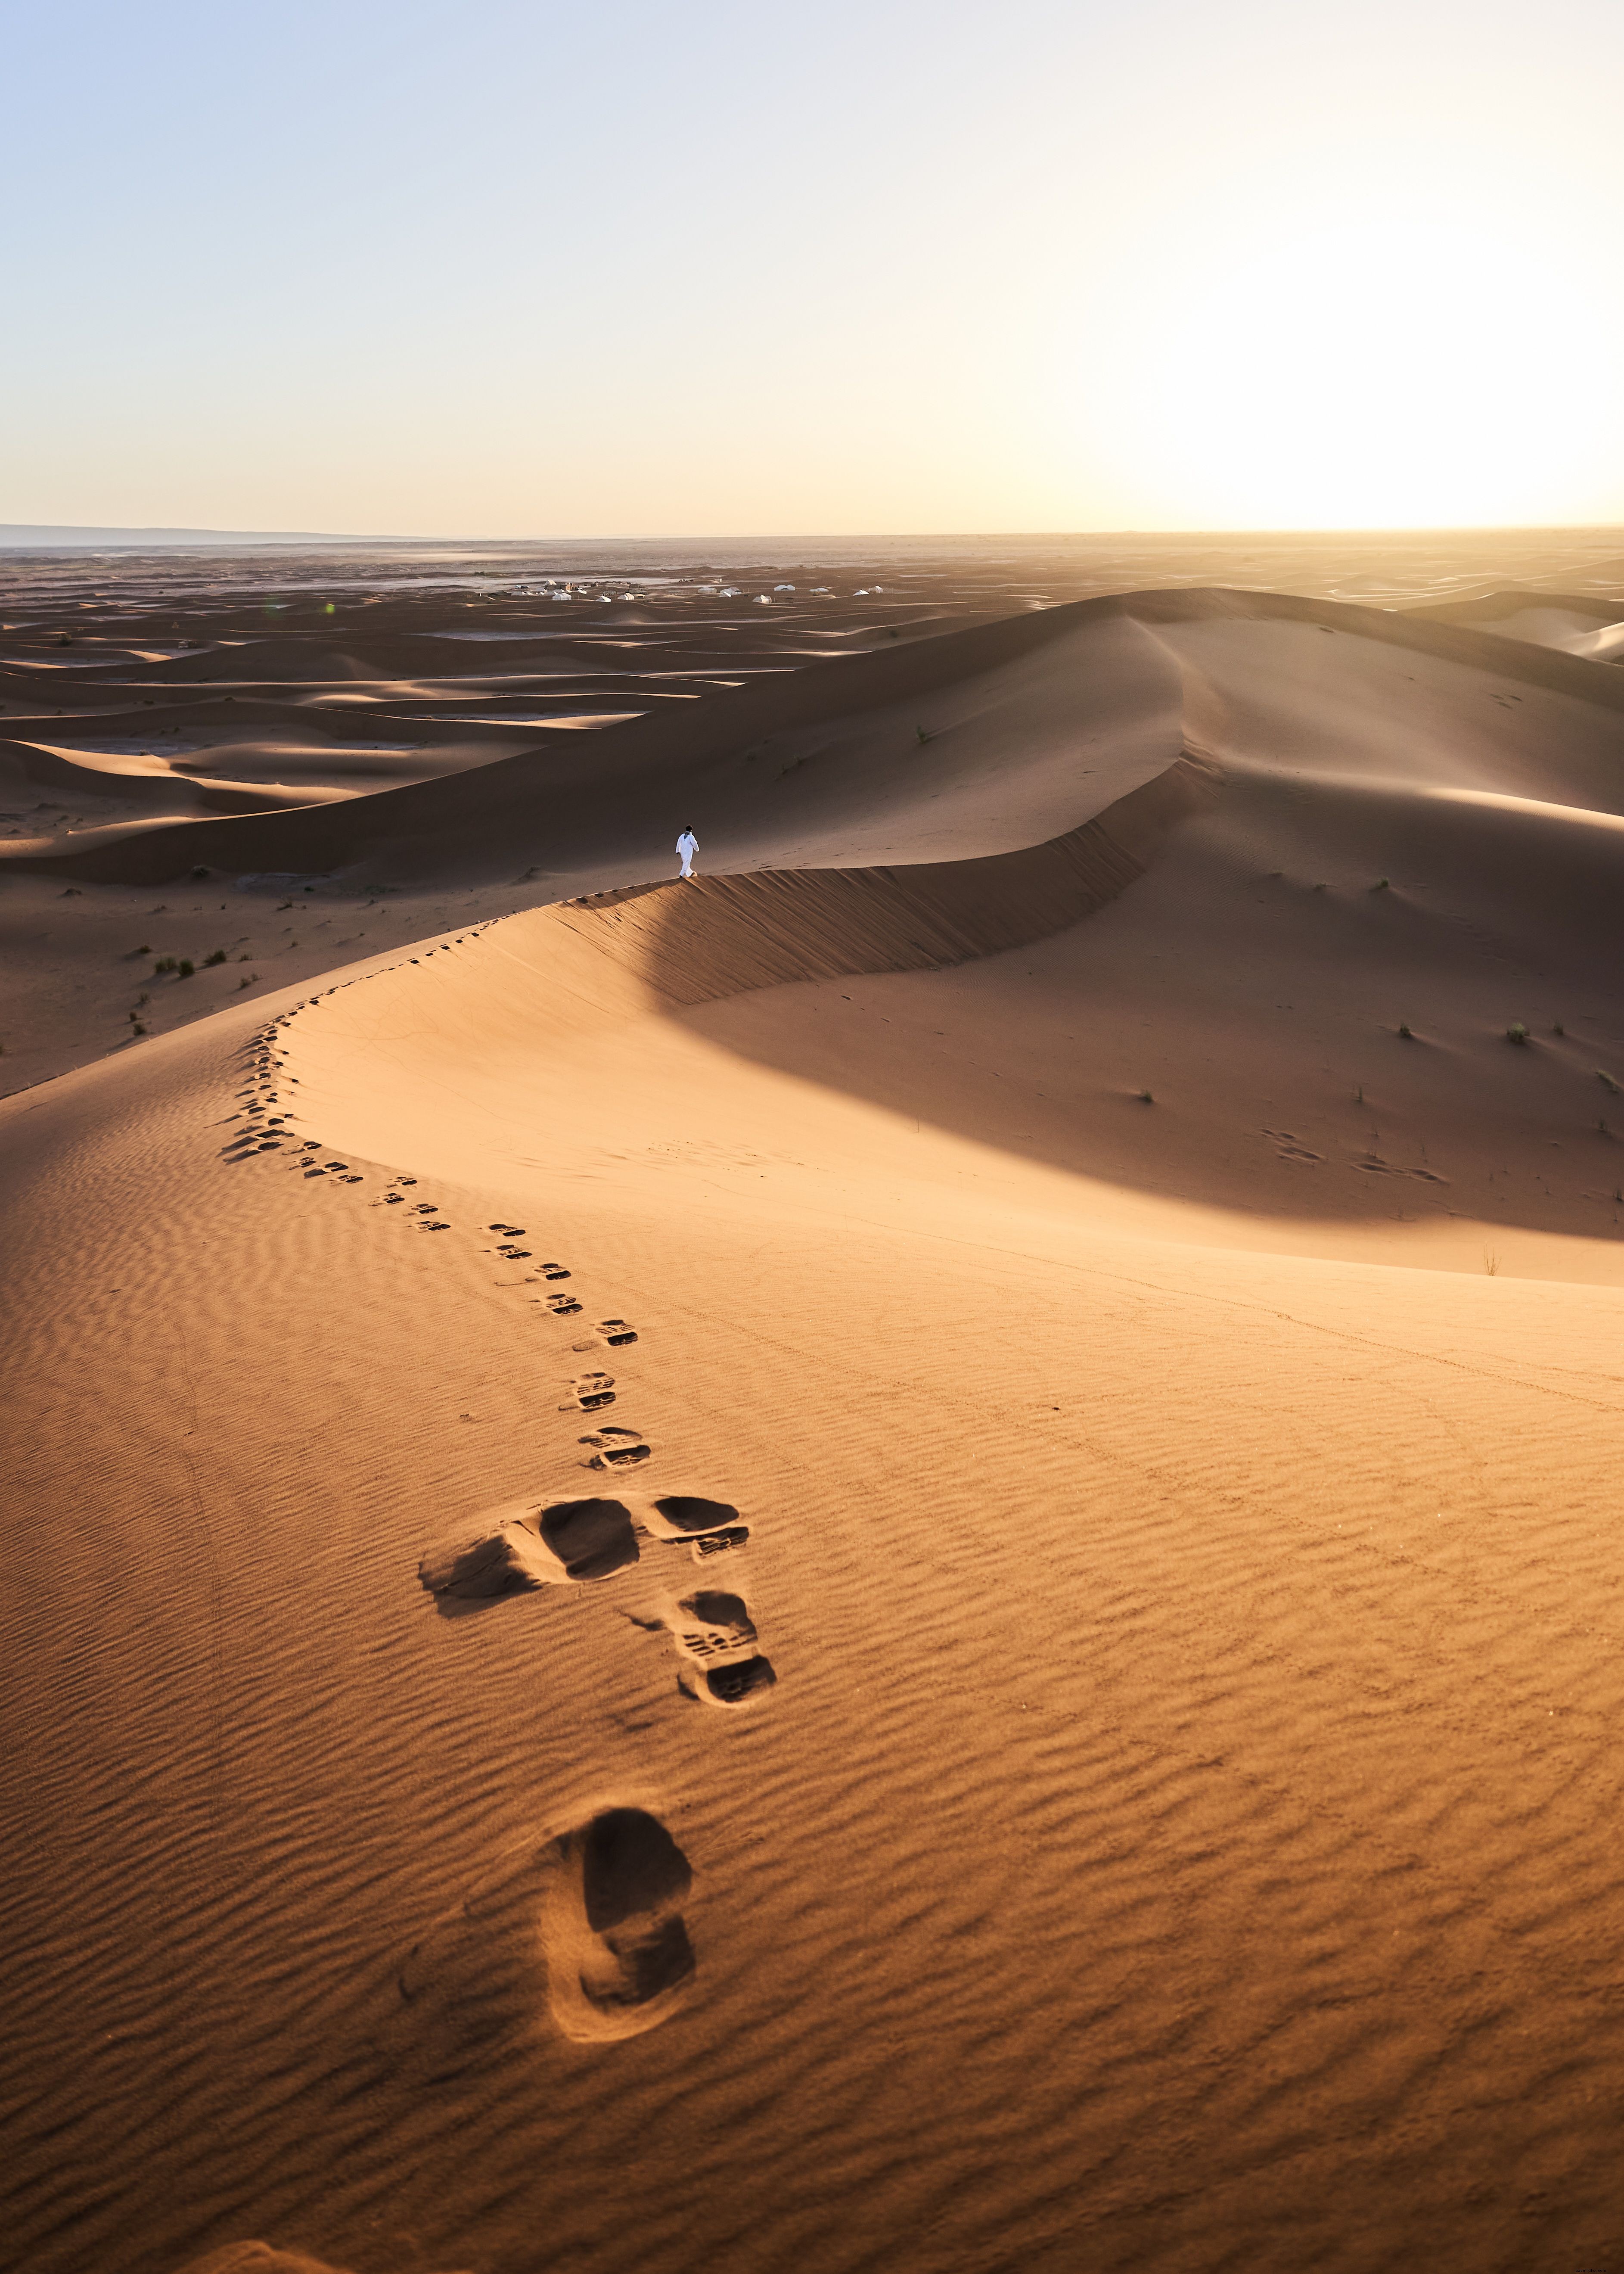 Passos deixados na foto das dunas de areia